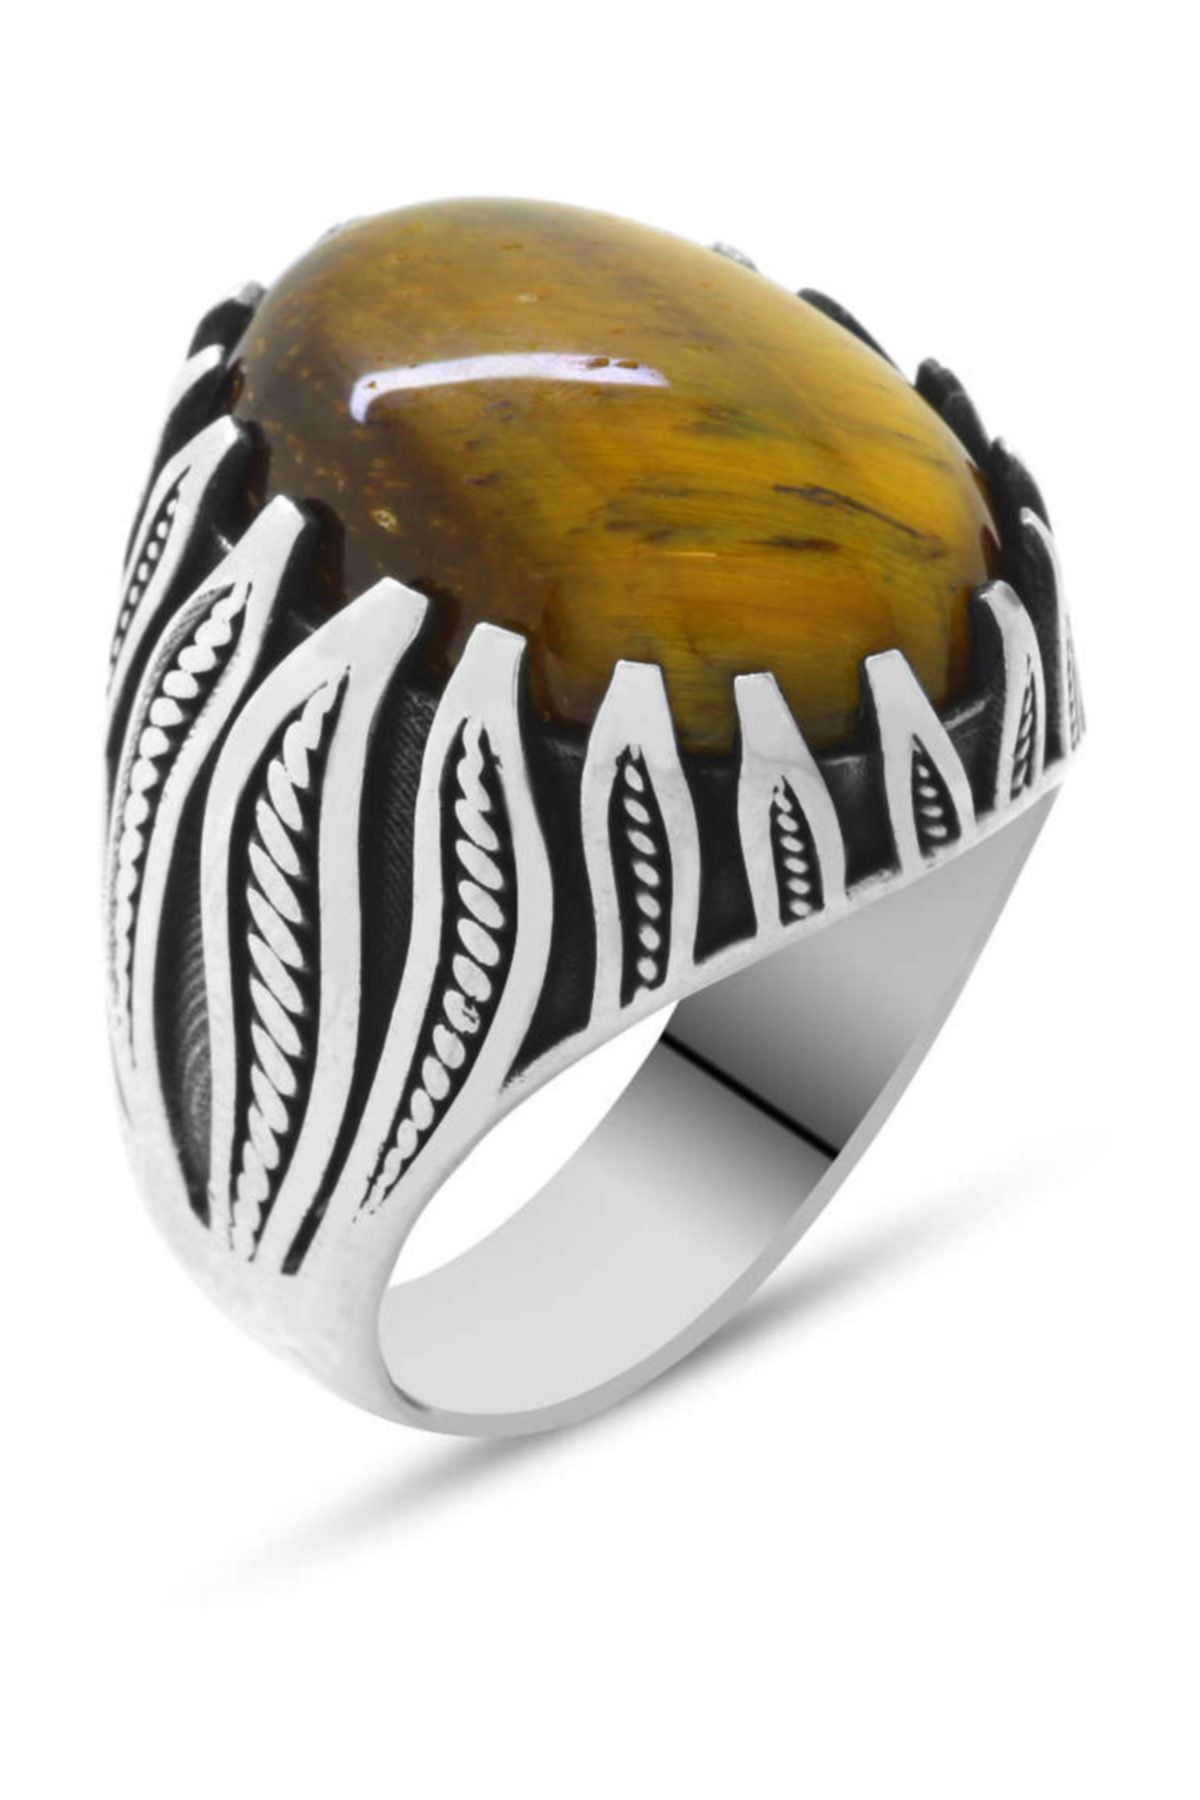 Tesbihane Kaplangözü Taşlı Alev Tasarım 925 Ayar Gümüş Kızılderili Yüzüğü